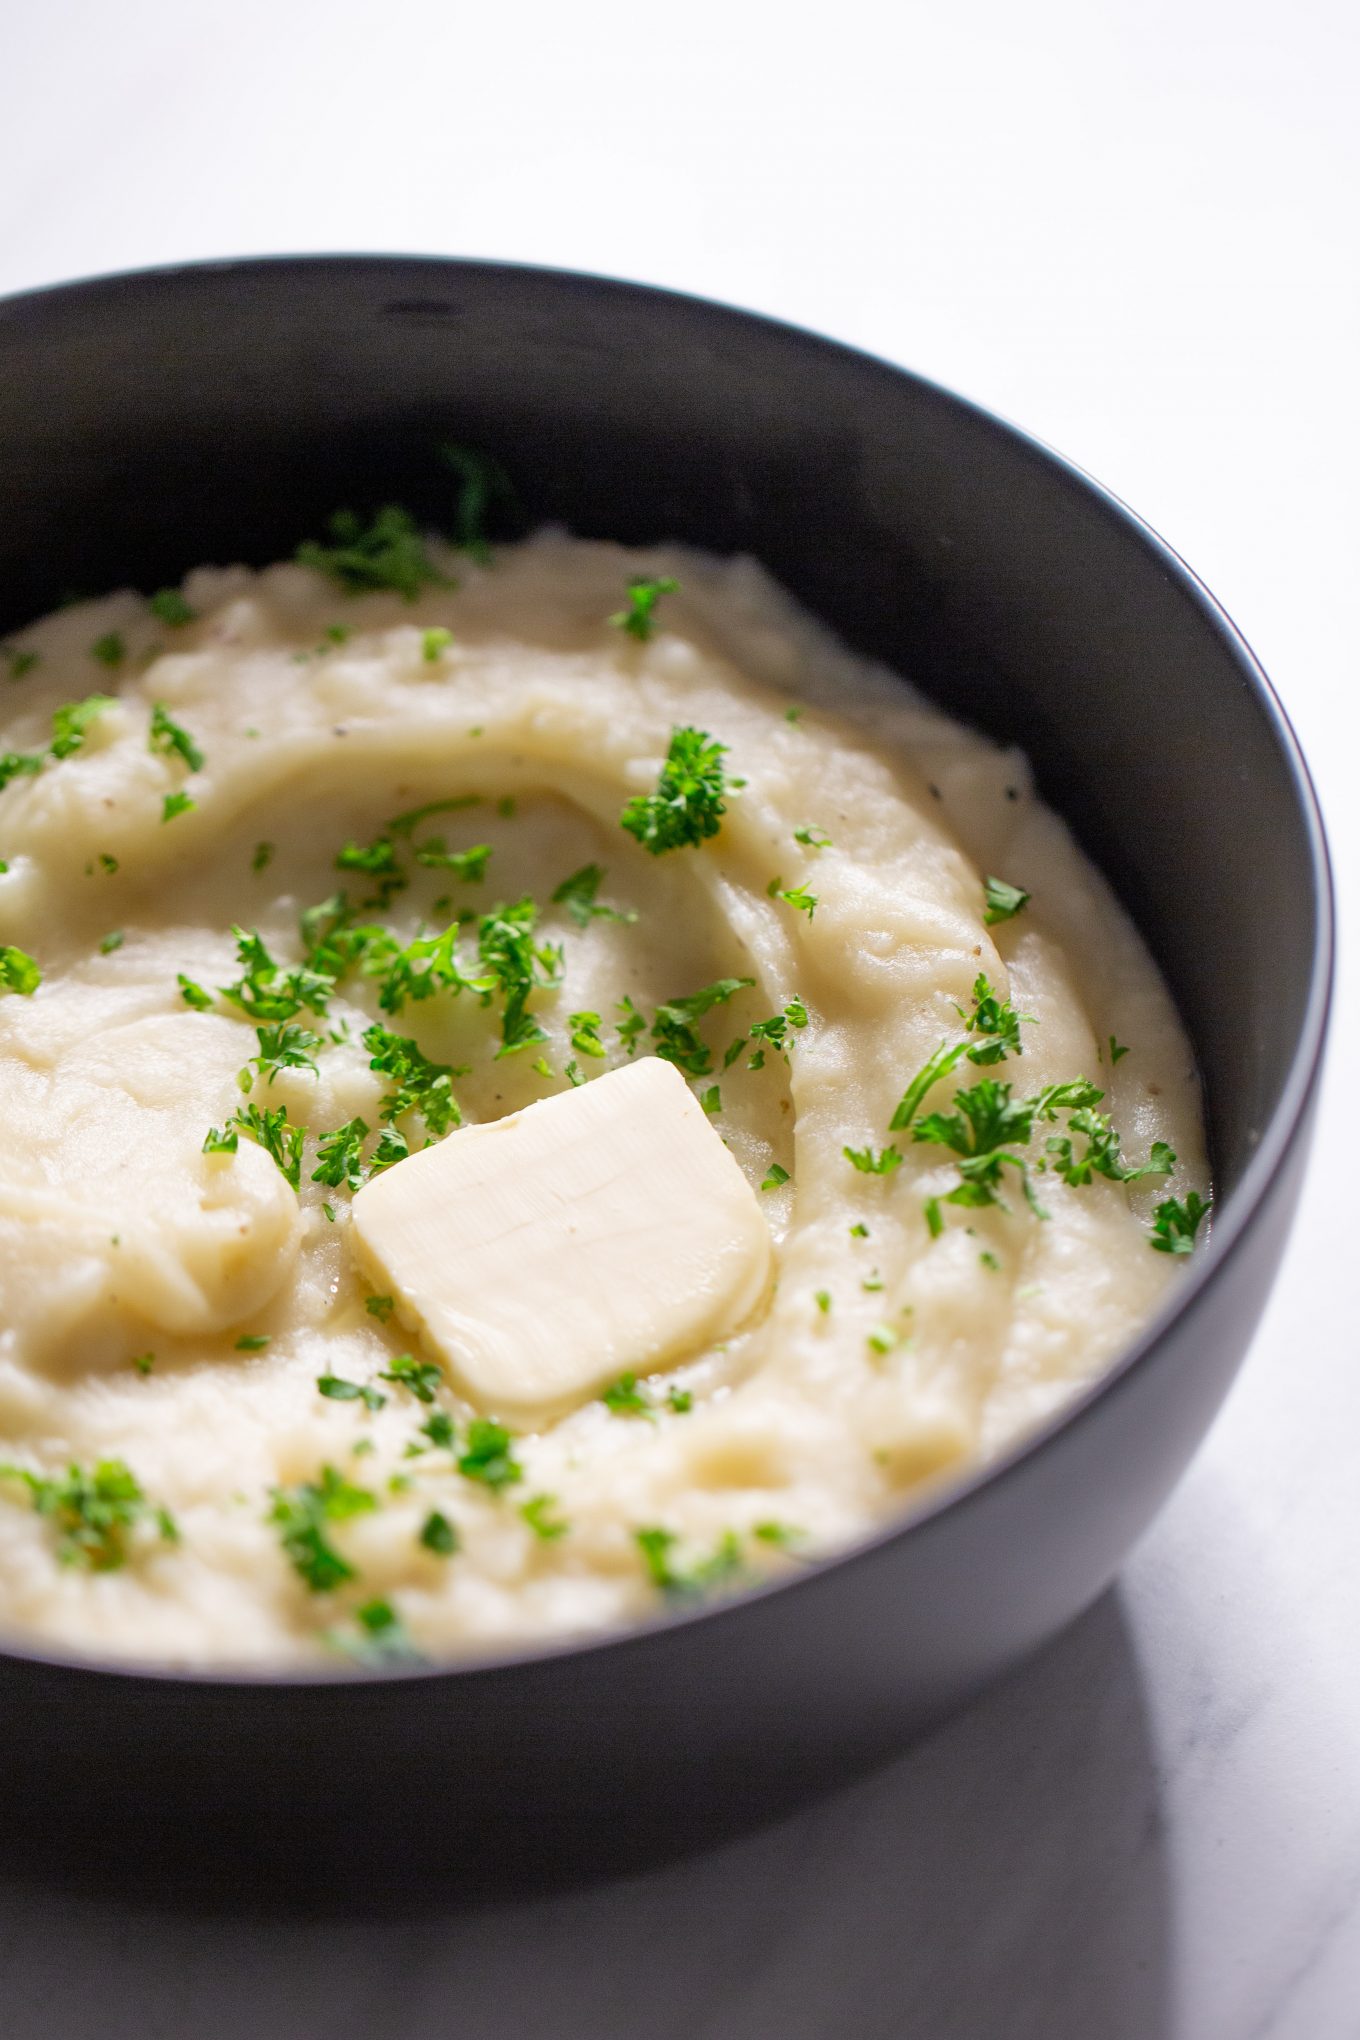 Vegan mashed potatoes in a black bowl